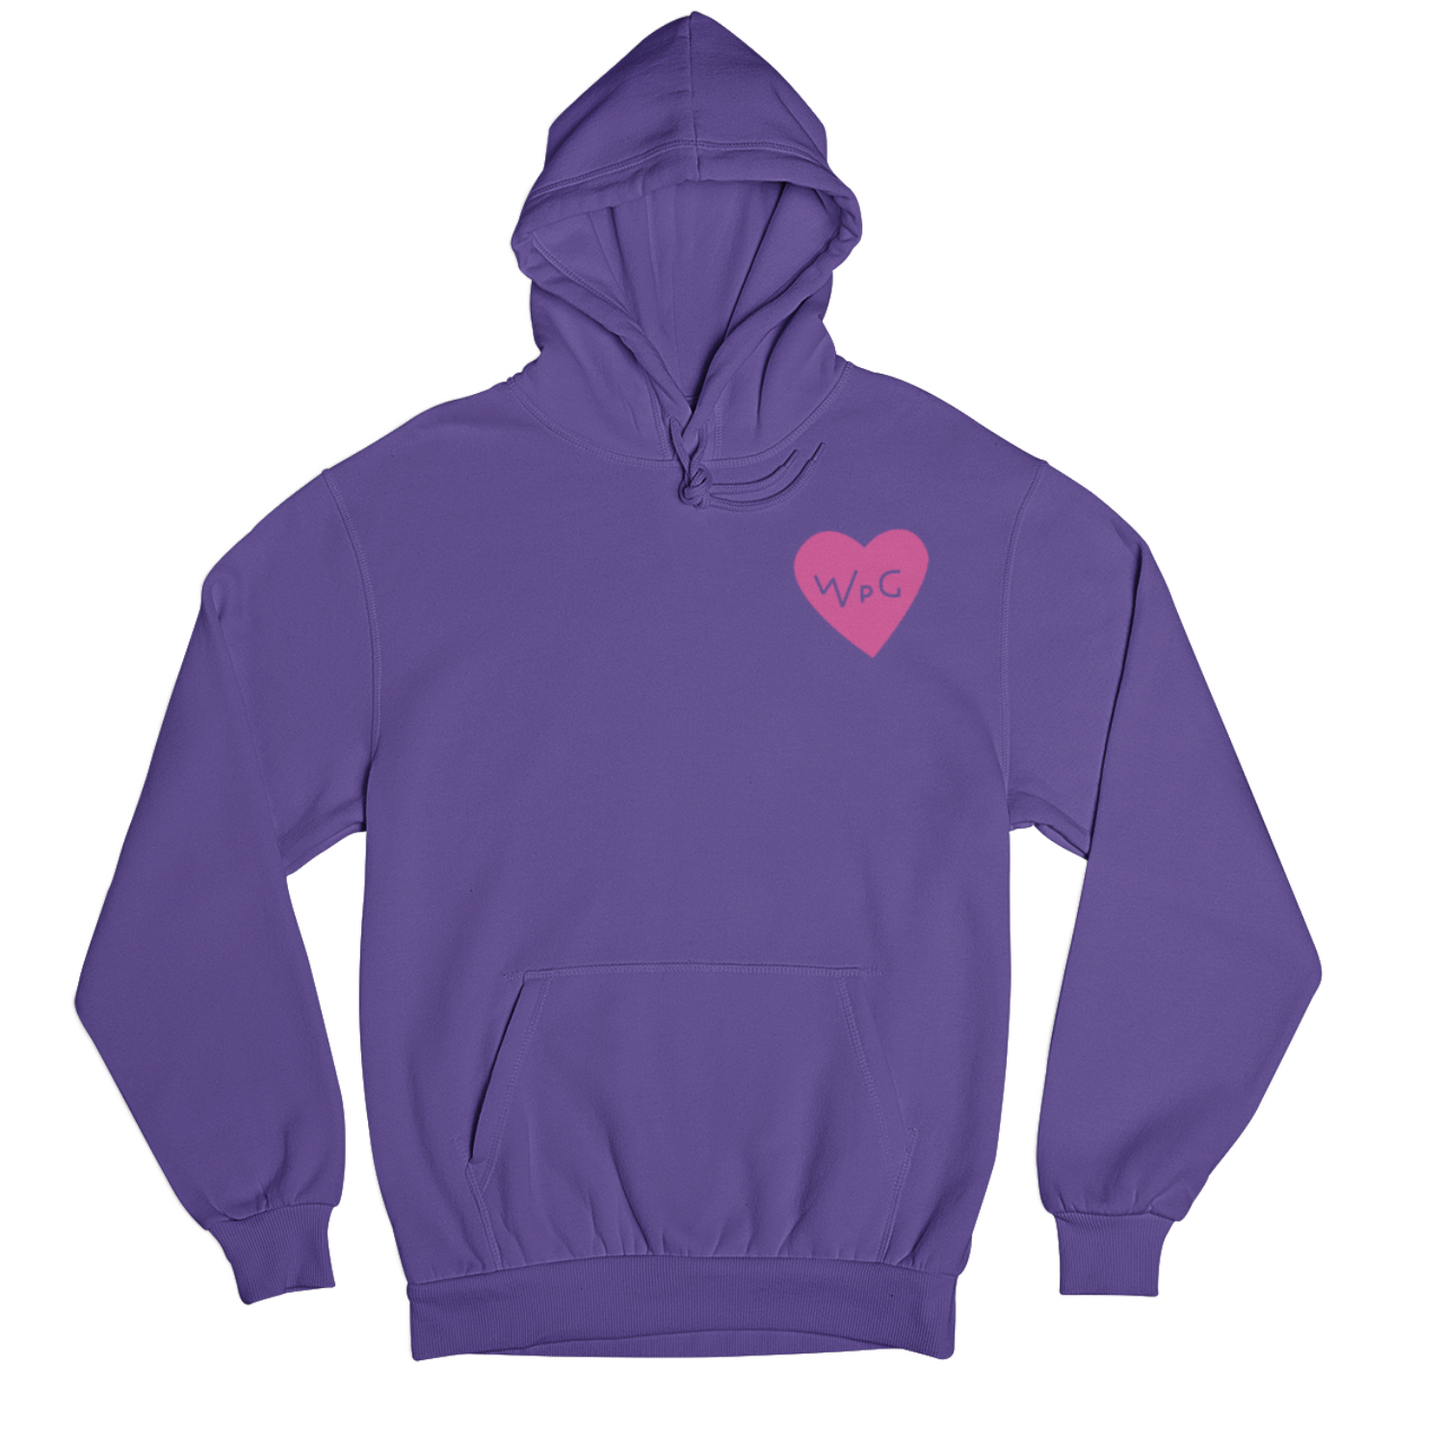 WPG Heart Hoodie | Pink on Purple